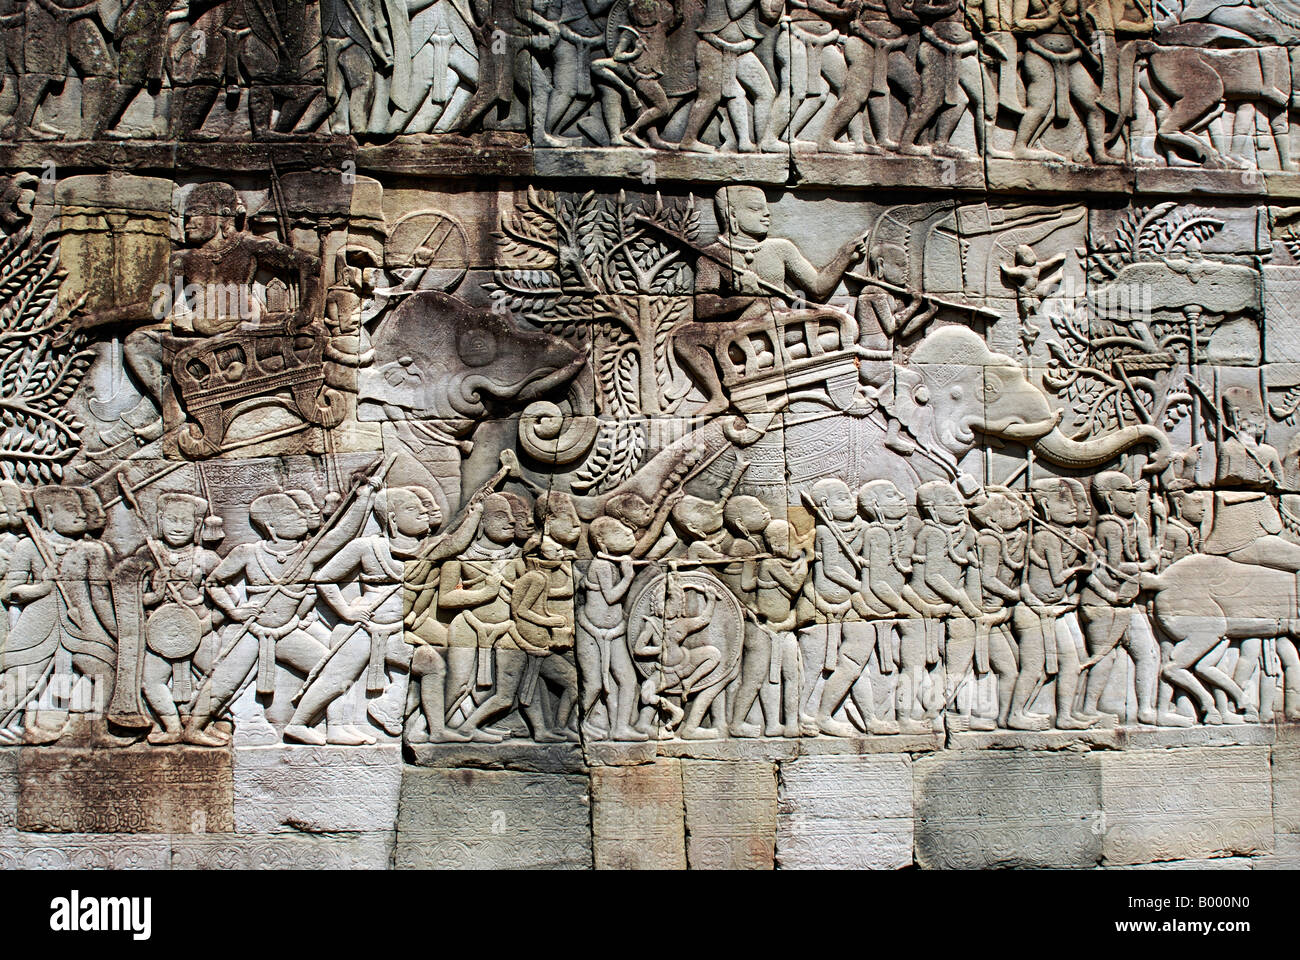 Kambodscha, Angkor Thom, spätes 12. Jahrhundert n. Chr. Armee auf dem Marsch. Südgelände Außengalerie. Stockfoto